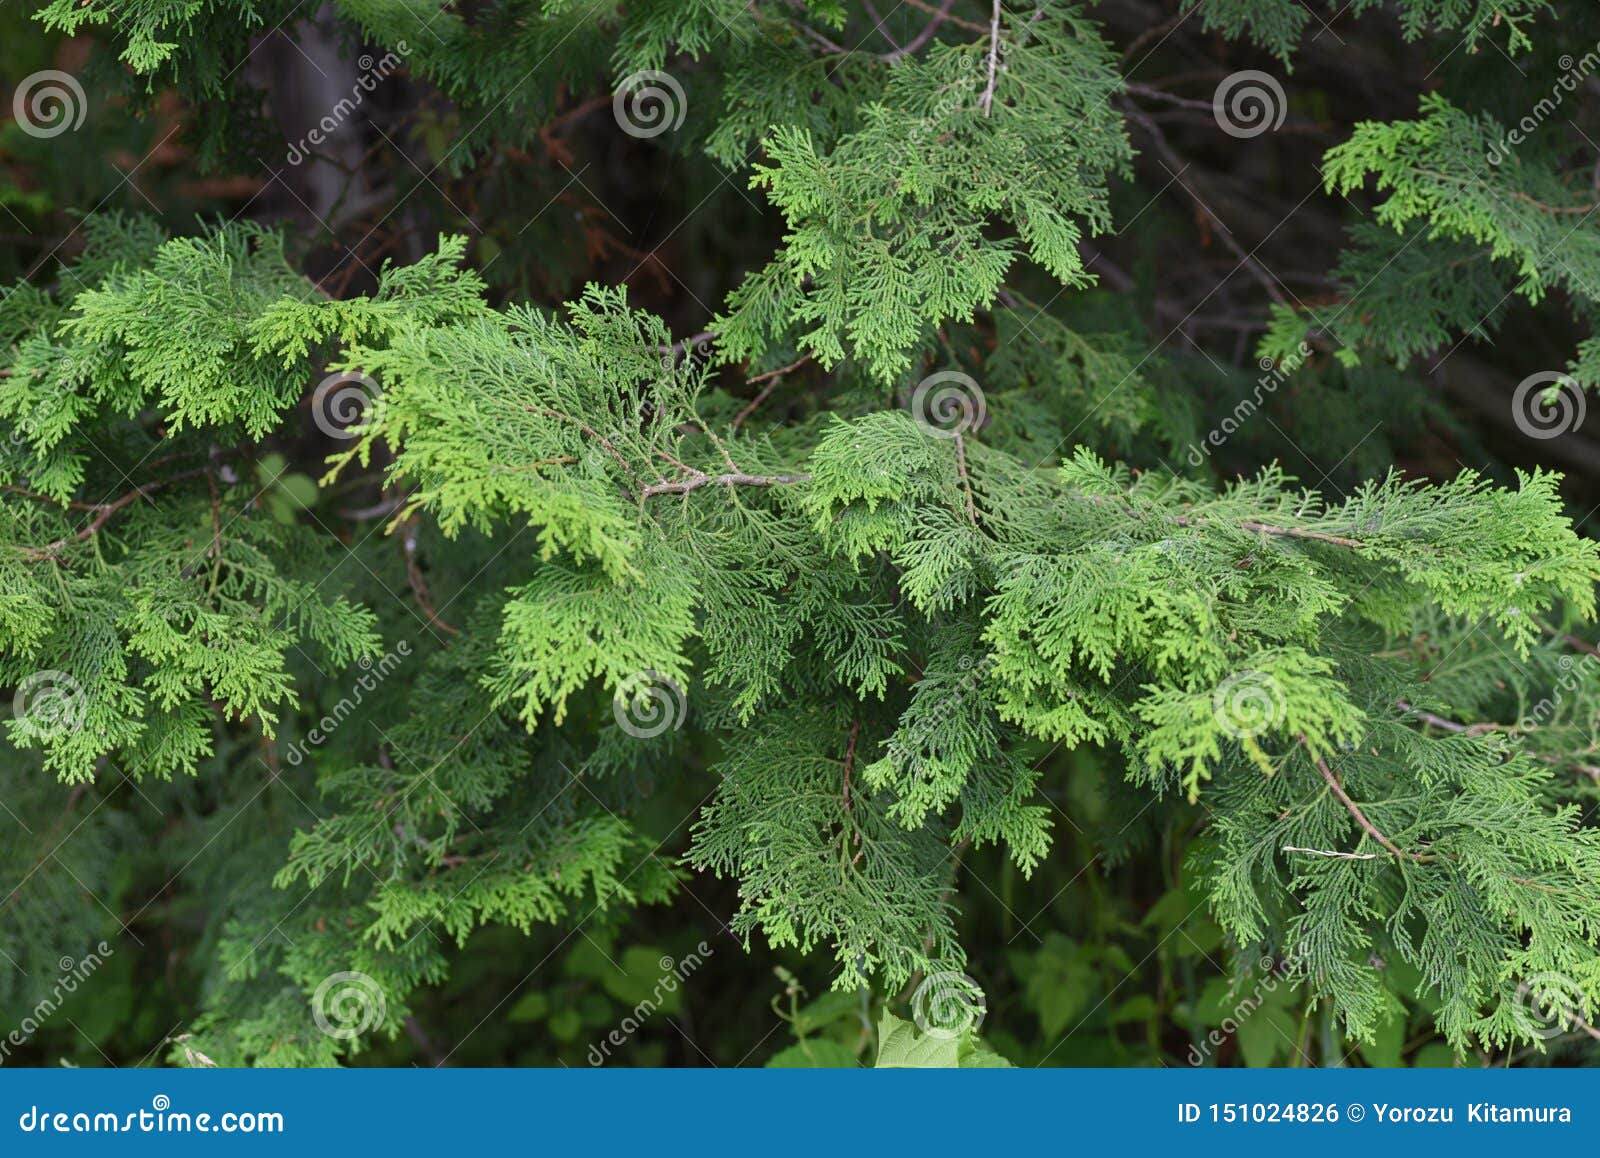 japanese cypress hinoki goban